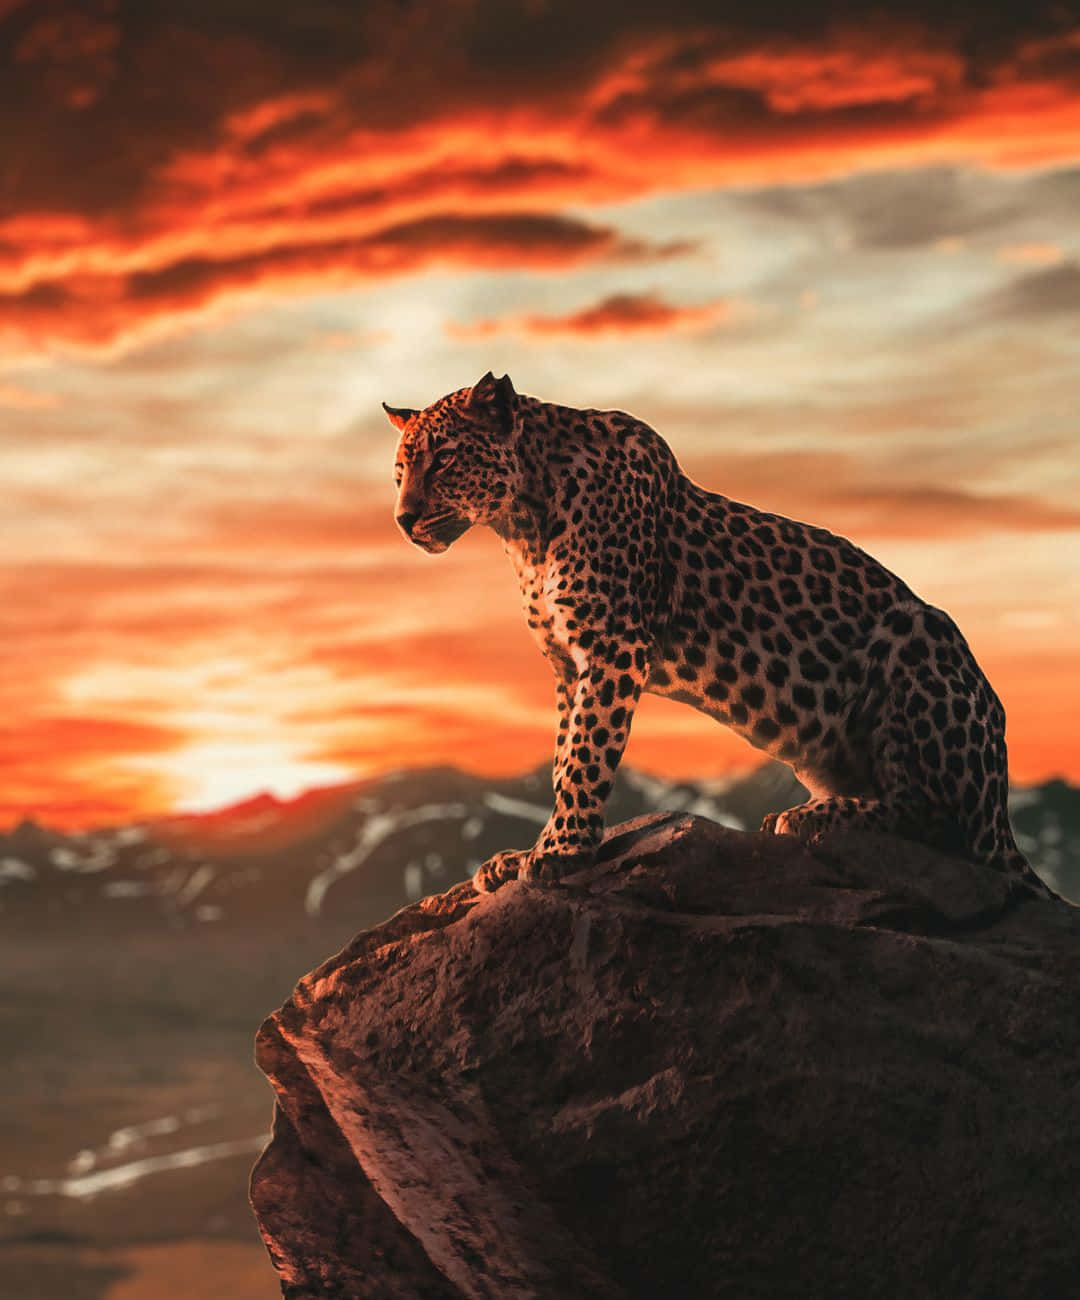 Imagemde Leopardo Em Um Penhasco Durante O Pôr Do Sol.